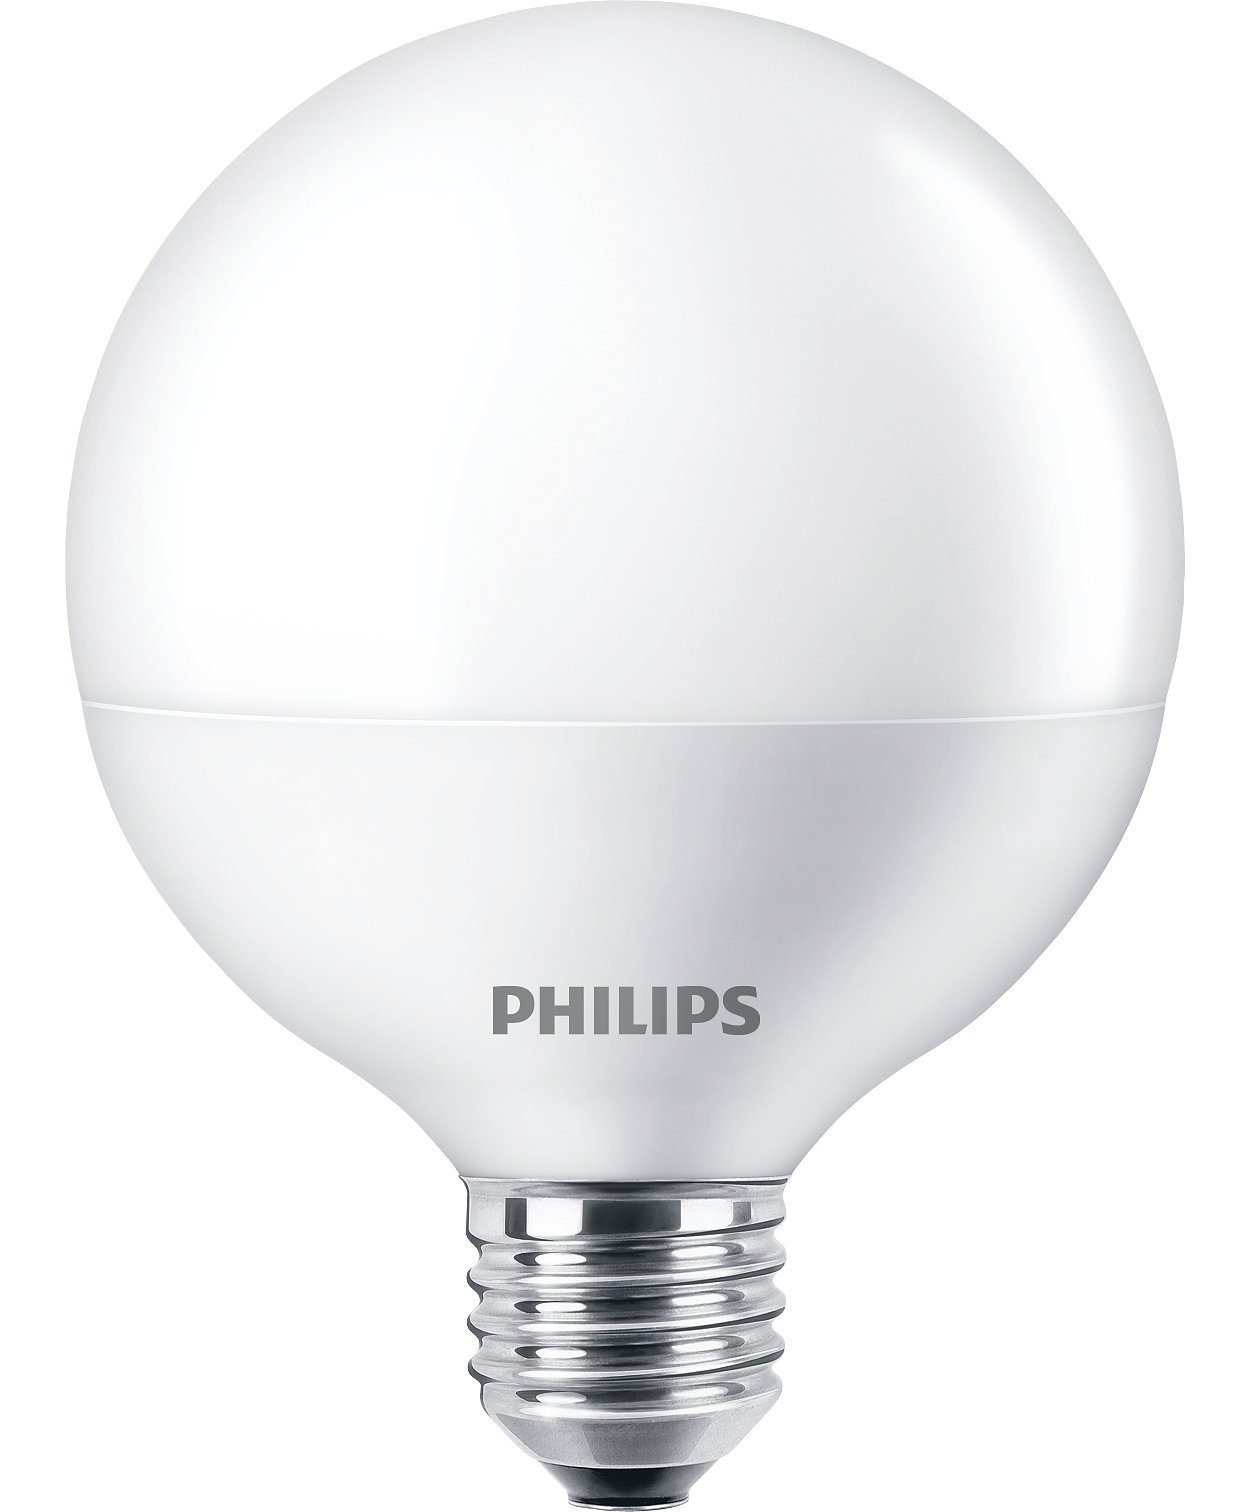 Οι λαμπτήρες LED (με ή χωρίς δυνατότητα ρύθμισης της έντασης φωτισμού) είναι ιδανικοί για εφαρμογές γενικού φωτισμού.